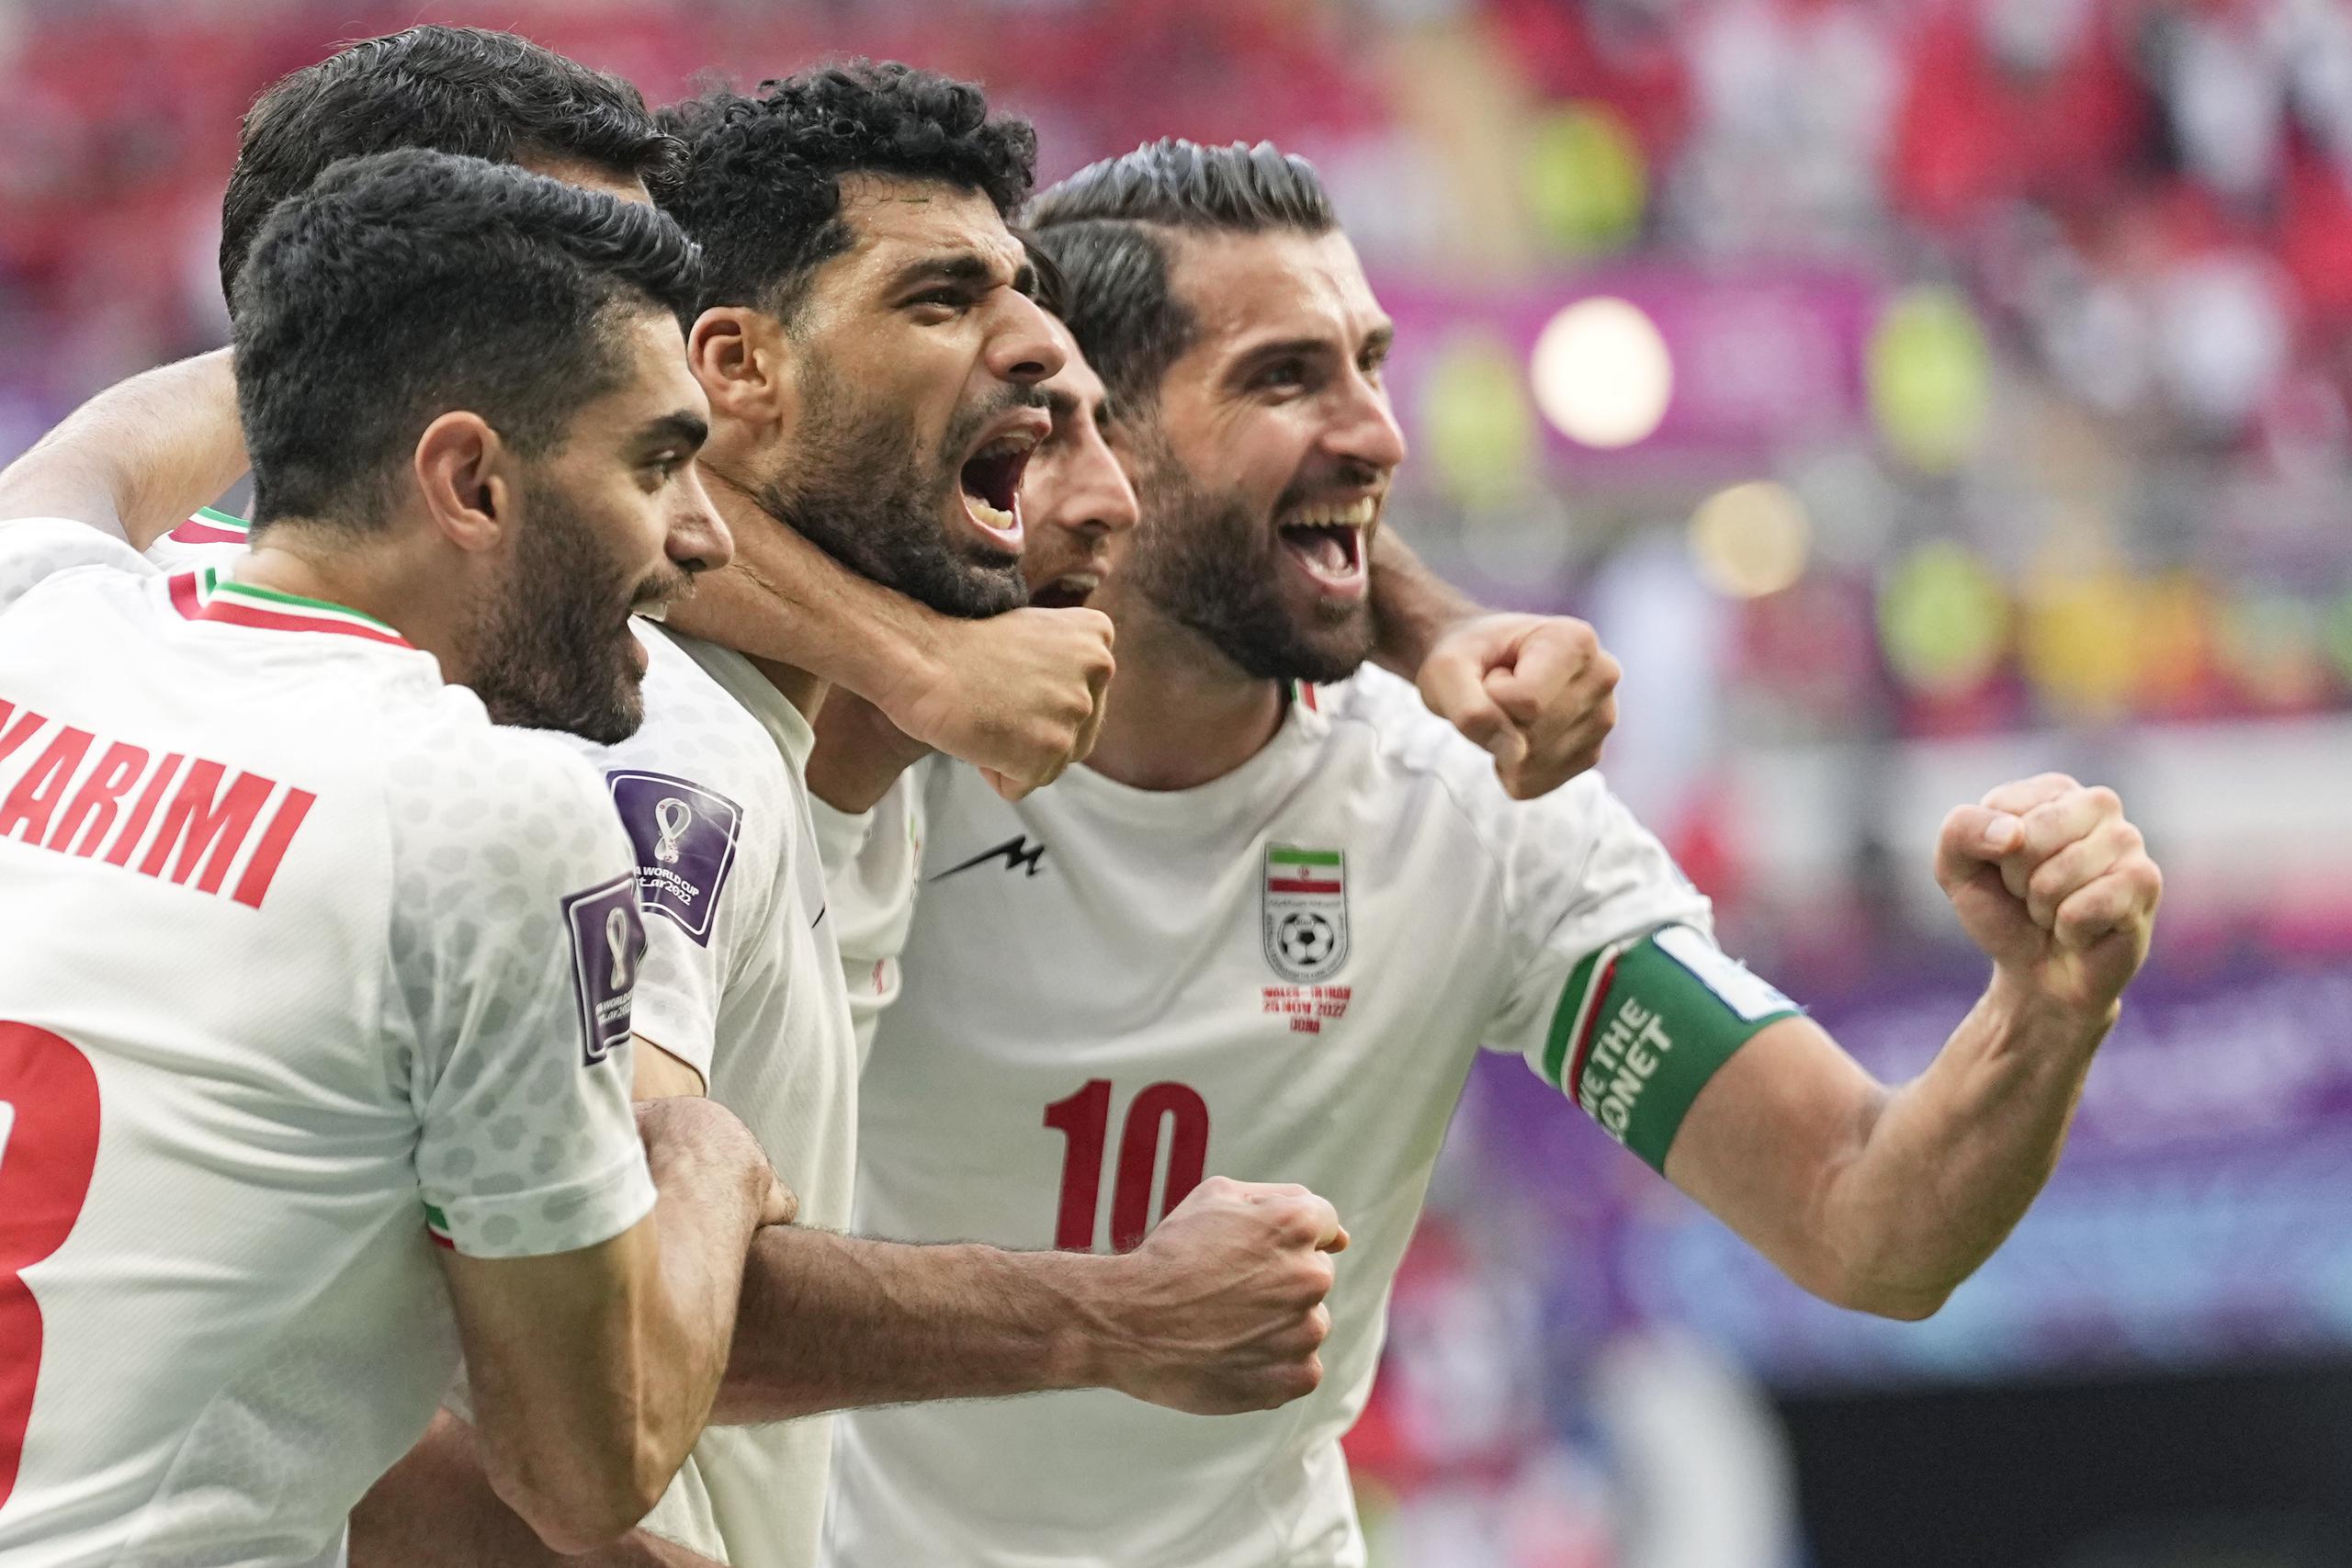 Los futbolistas de la selección iraní celebran su victoria en su partido del Grupo B del Mundial contra Gales, en el estadio Ahmad Bin Ali, en Rayán, Qatar, el 25 de noviembre de 2022. (AP Foto/Pavel Golovkin)